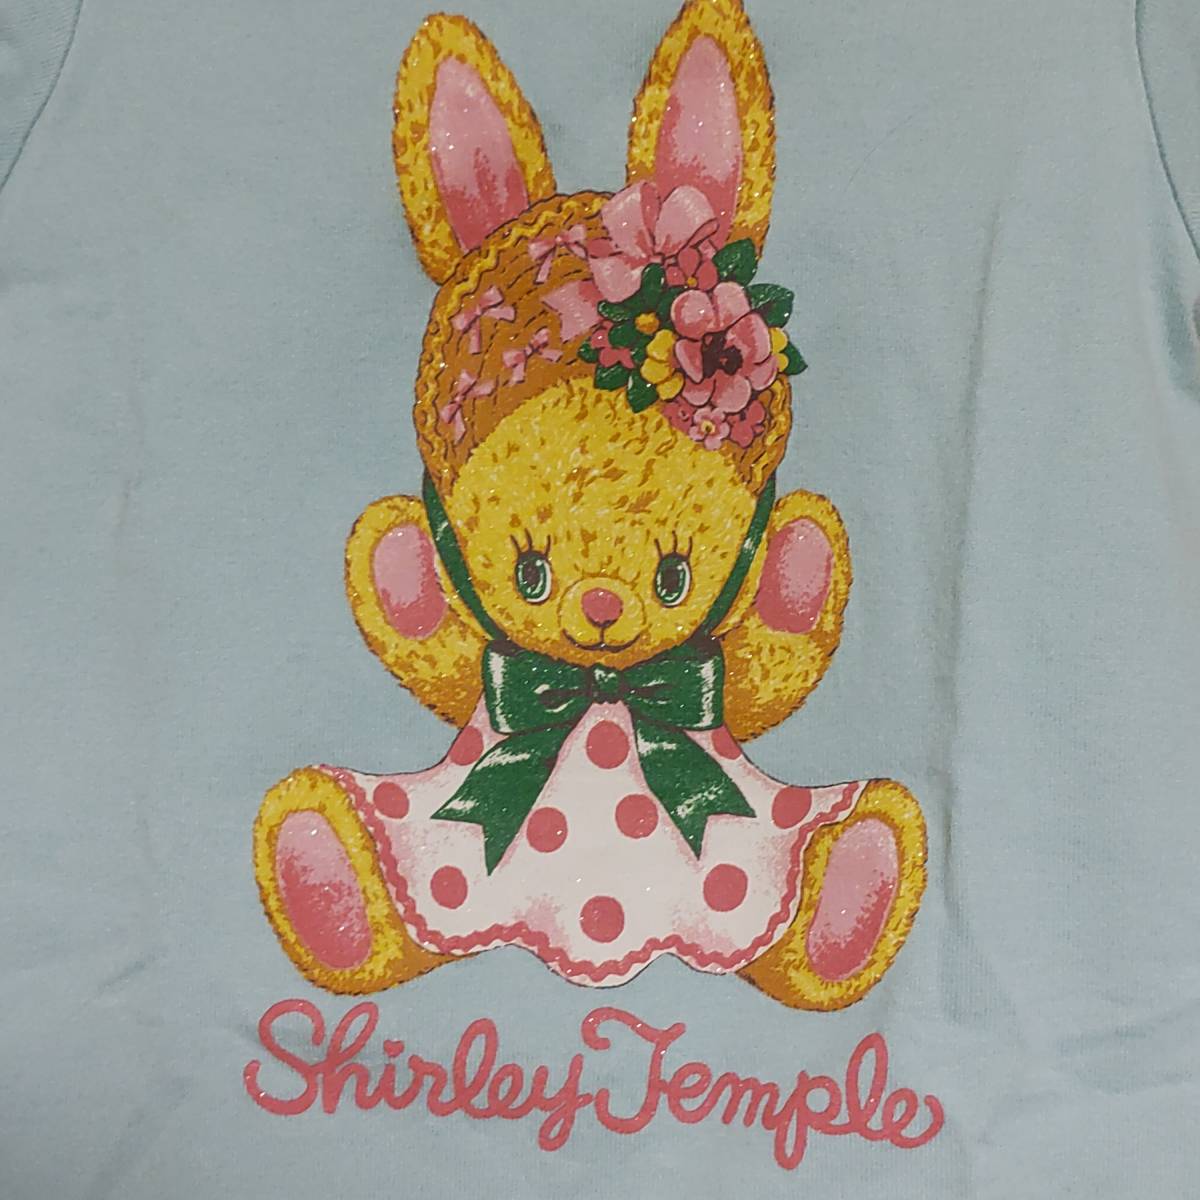 日本製シャーリーテンプルShirley  Templeミントグリーン100cmウサギ花リボン細身カットソー女の子キッズ子供こども80cm90cmラメ半袖Tシャツ